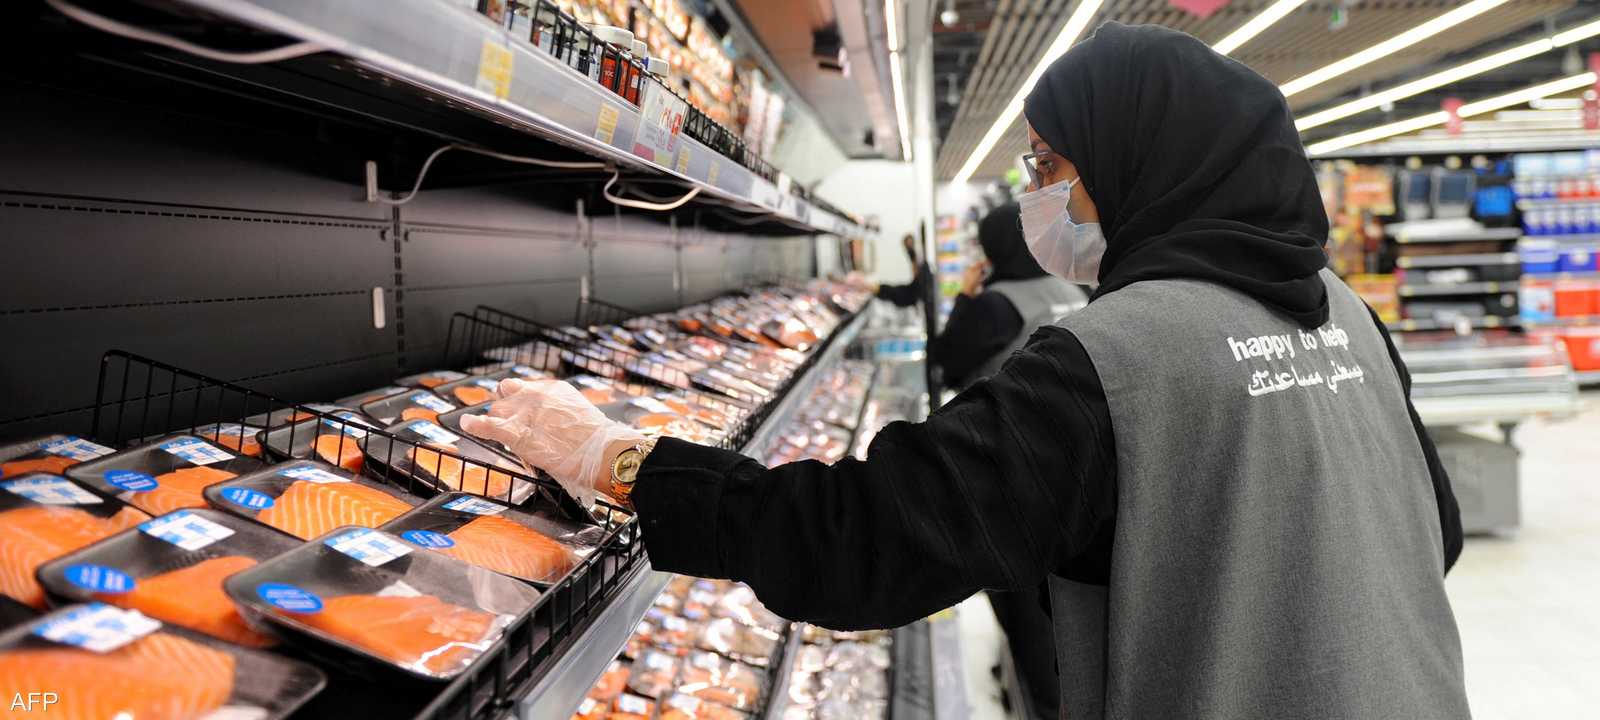 ارتفاع أسعار الأغذية في السعودية